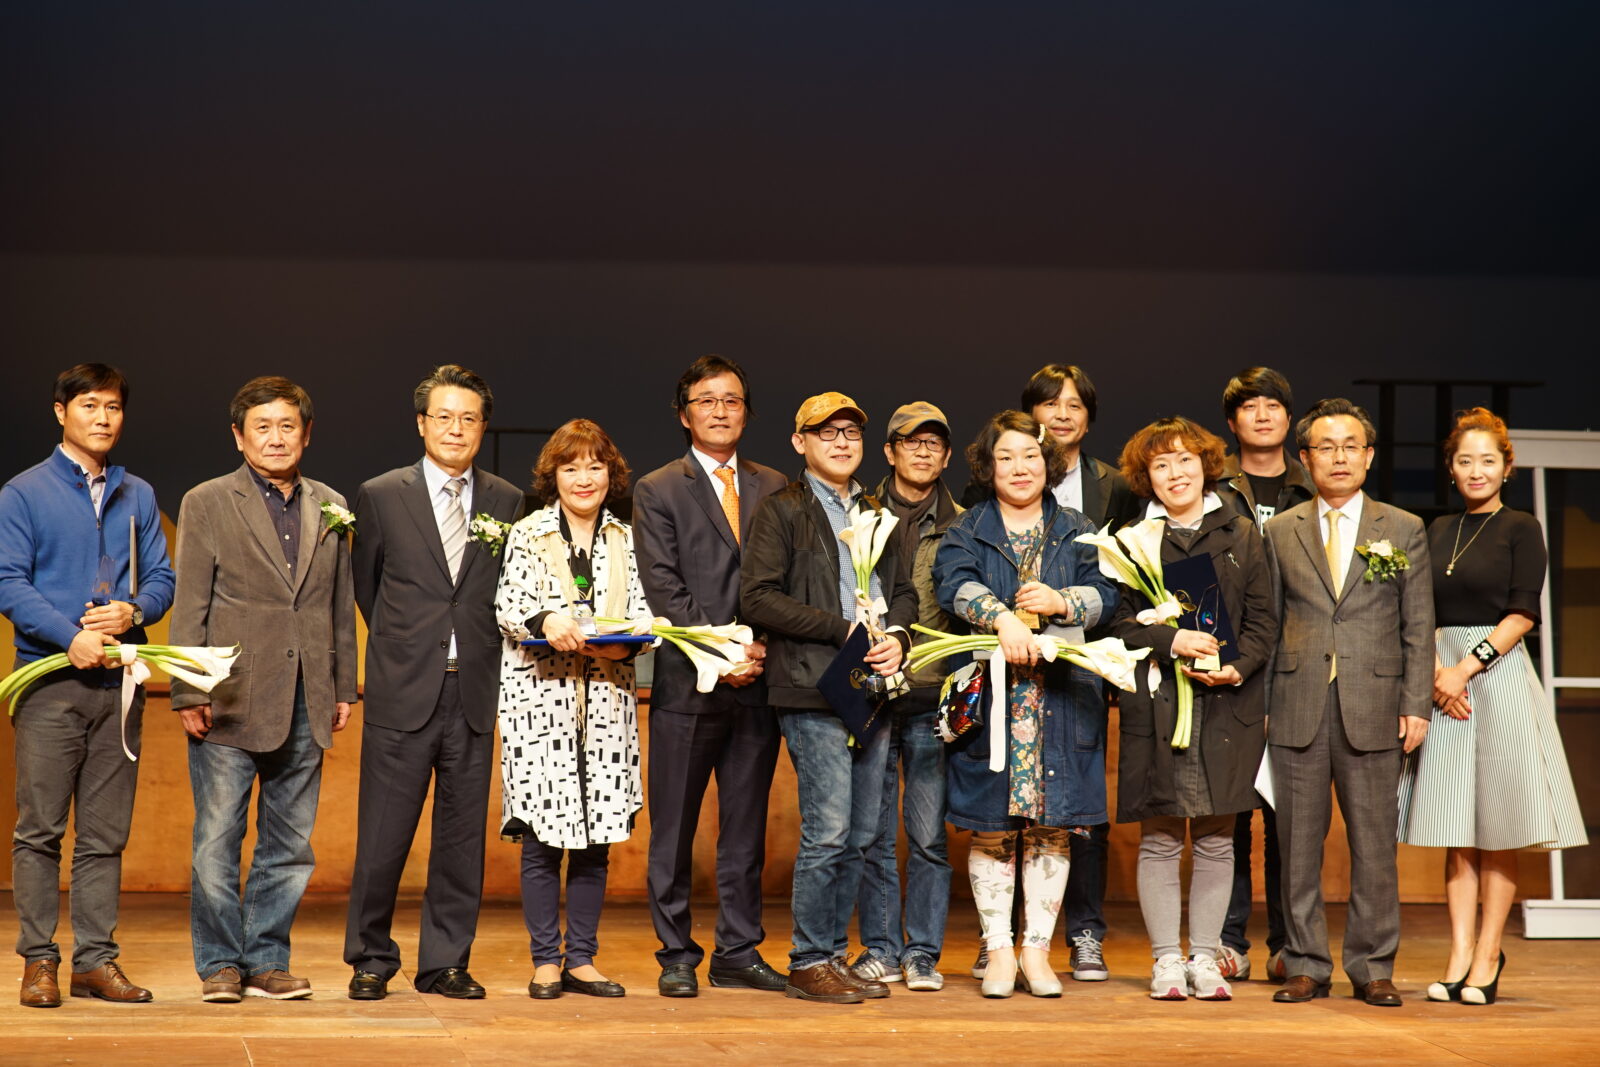 기념촬영하는 수상자들(손에 꽃을 들었다) - 천정락, 김미향, 서영삼, 김미화, 김수정(좌측부터)